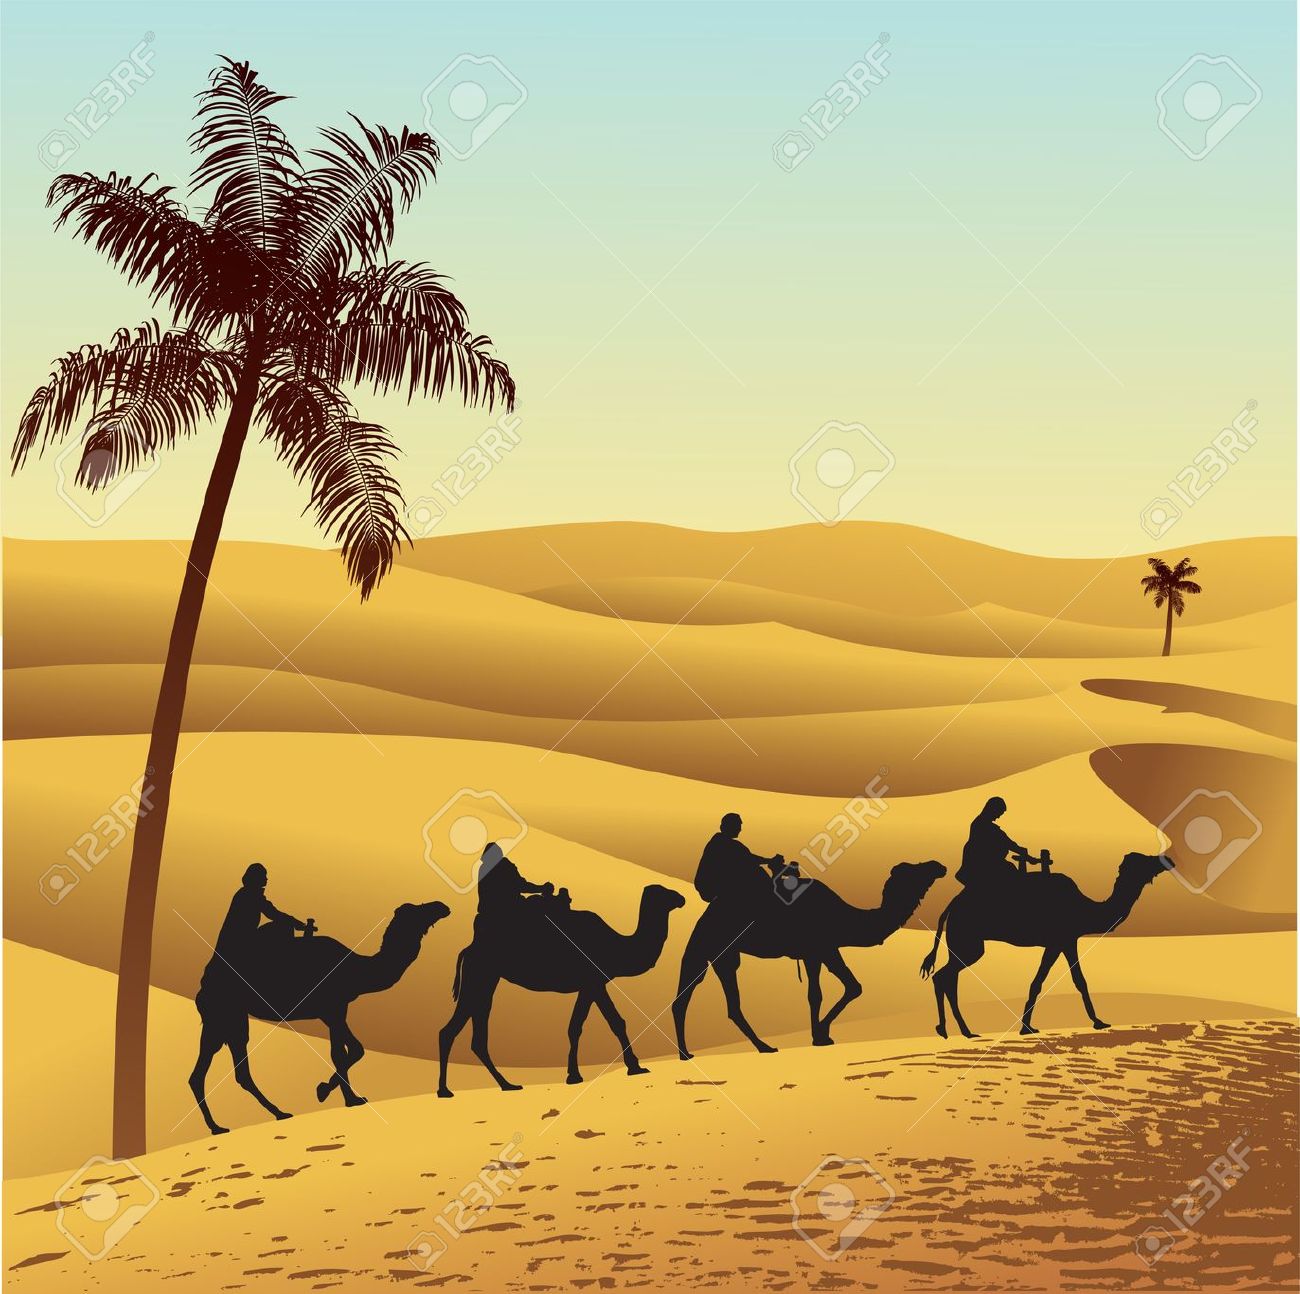 Arabian Desert clipart, Download Arabian Desert clipart for free 2019